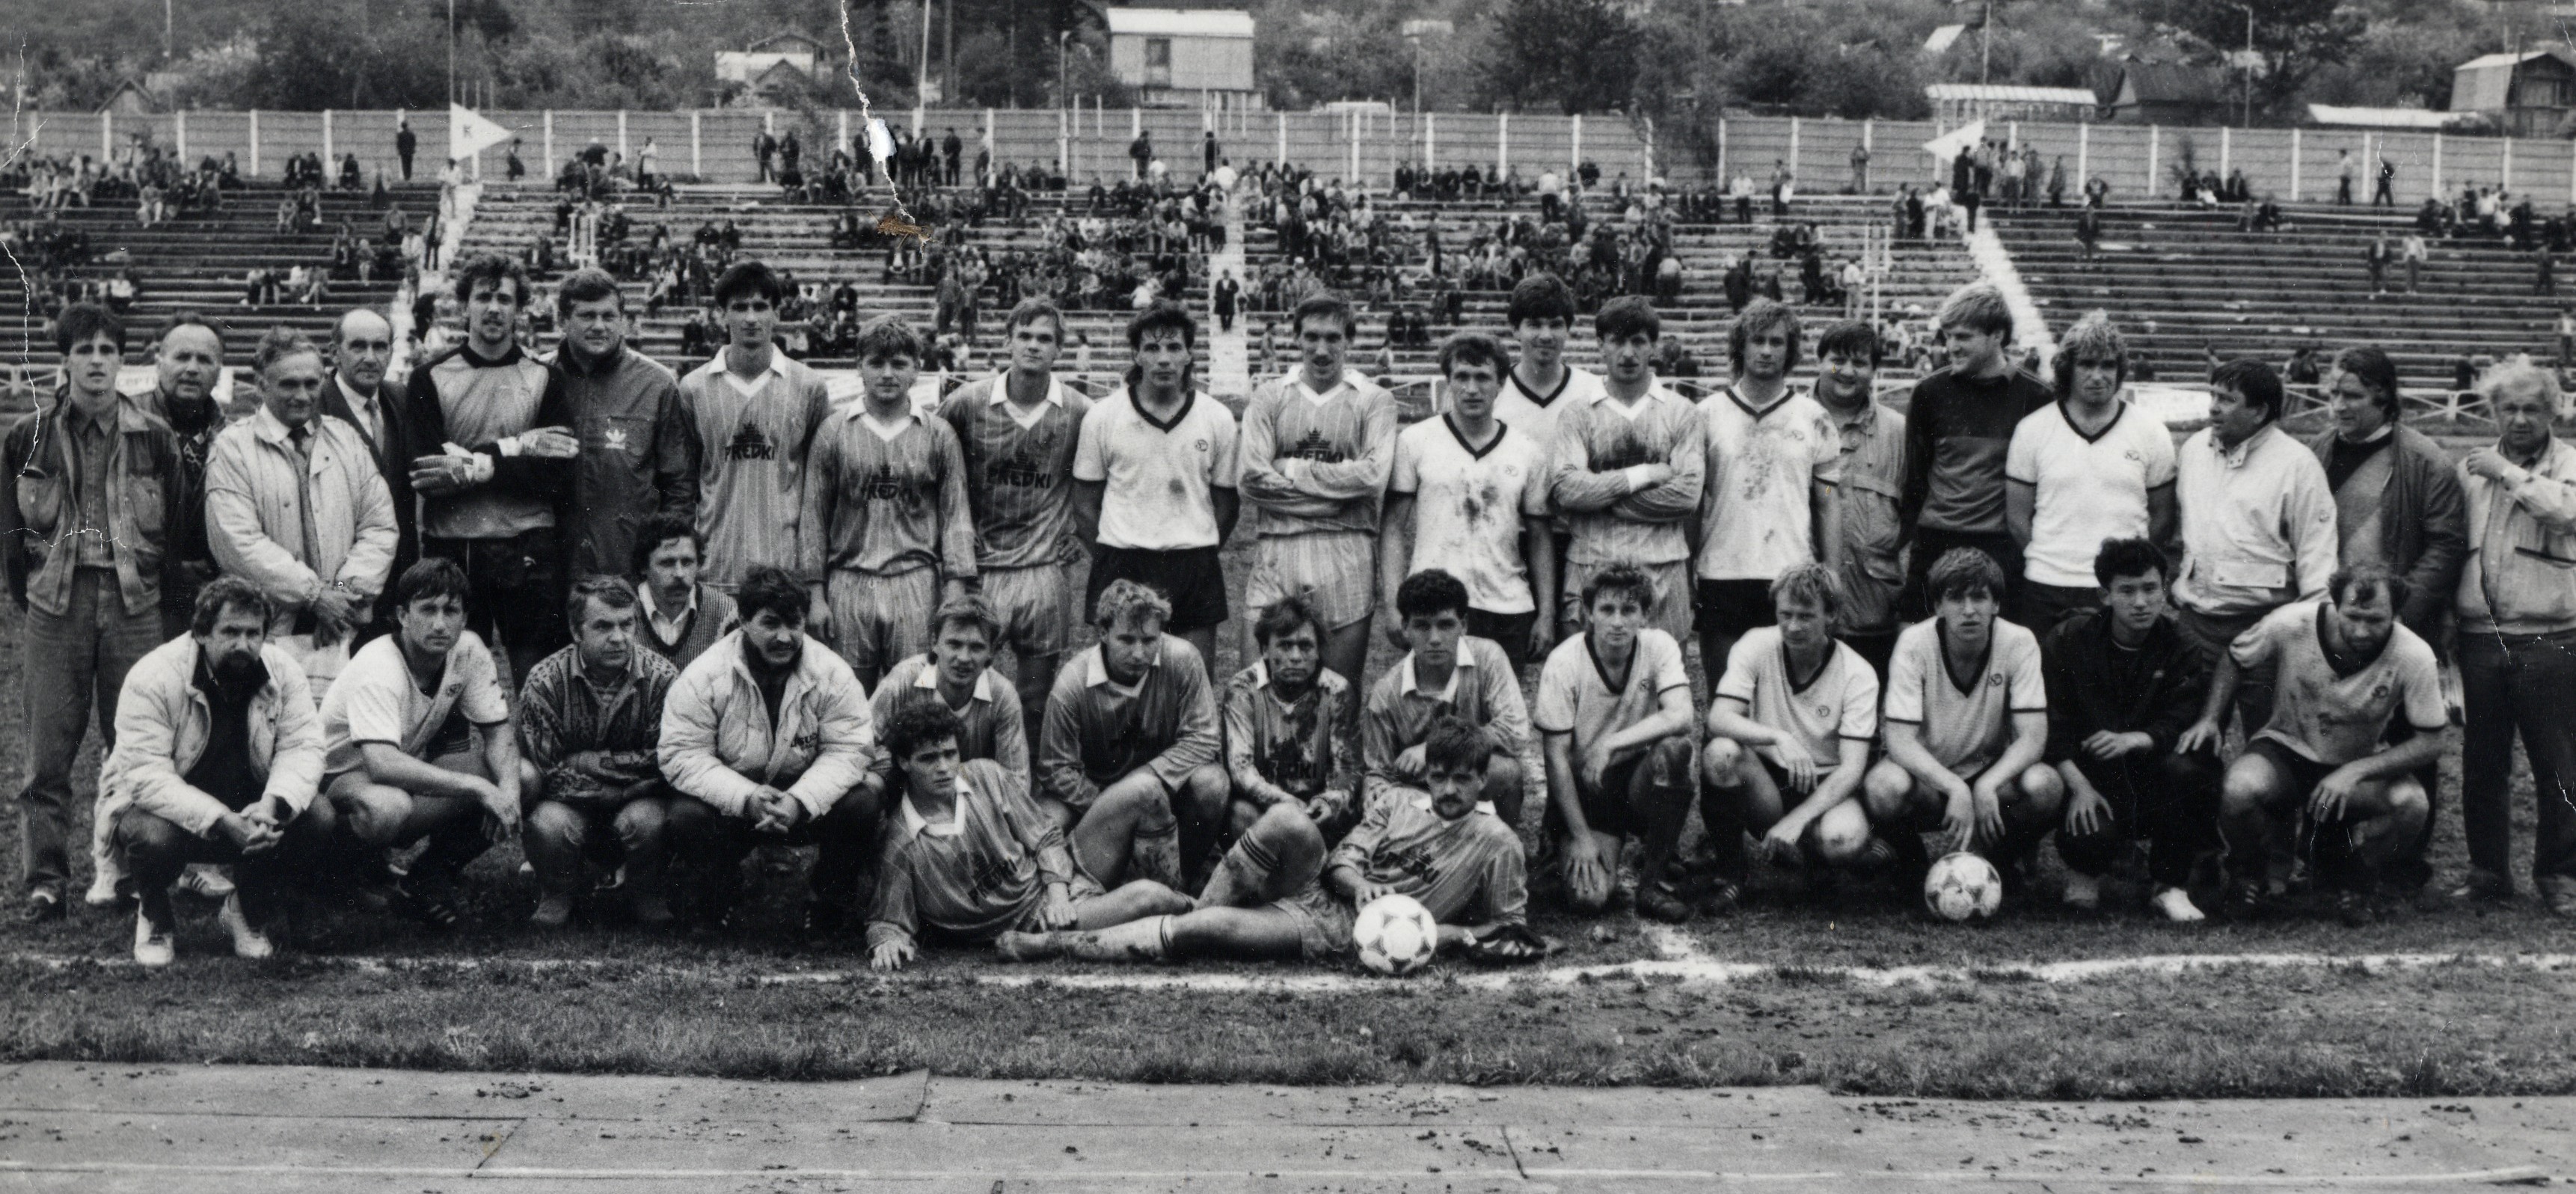 Участники матча «Сахалин» - «Погонь» (Шецин, Польша), 1990 год. Анатолий Смоляк – десятый справа в верхнем ряду.